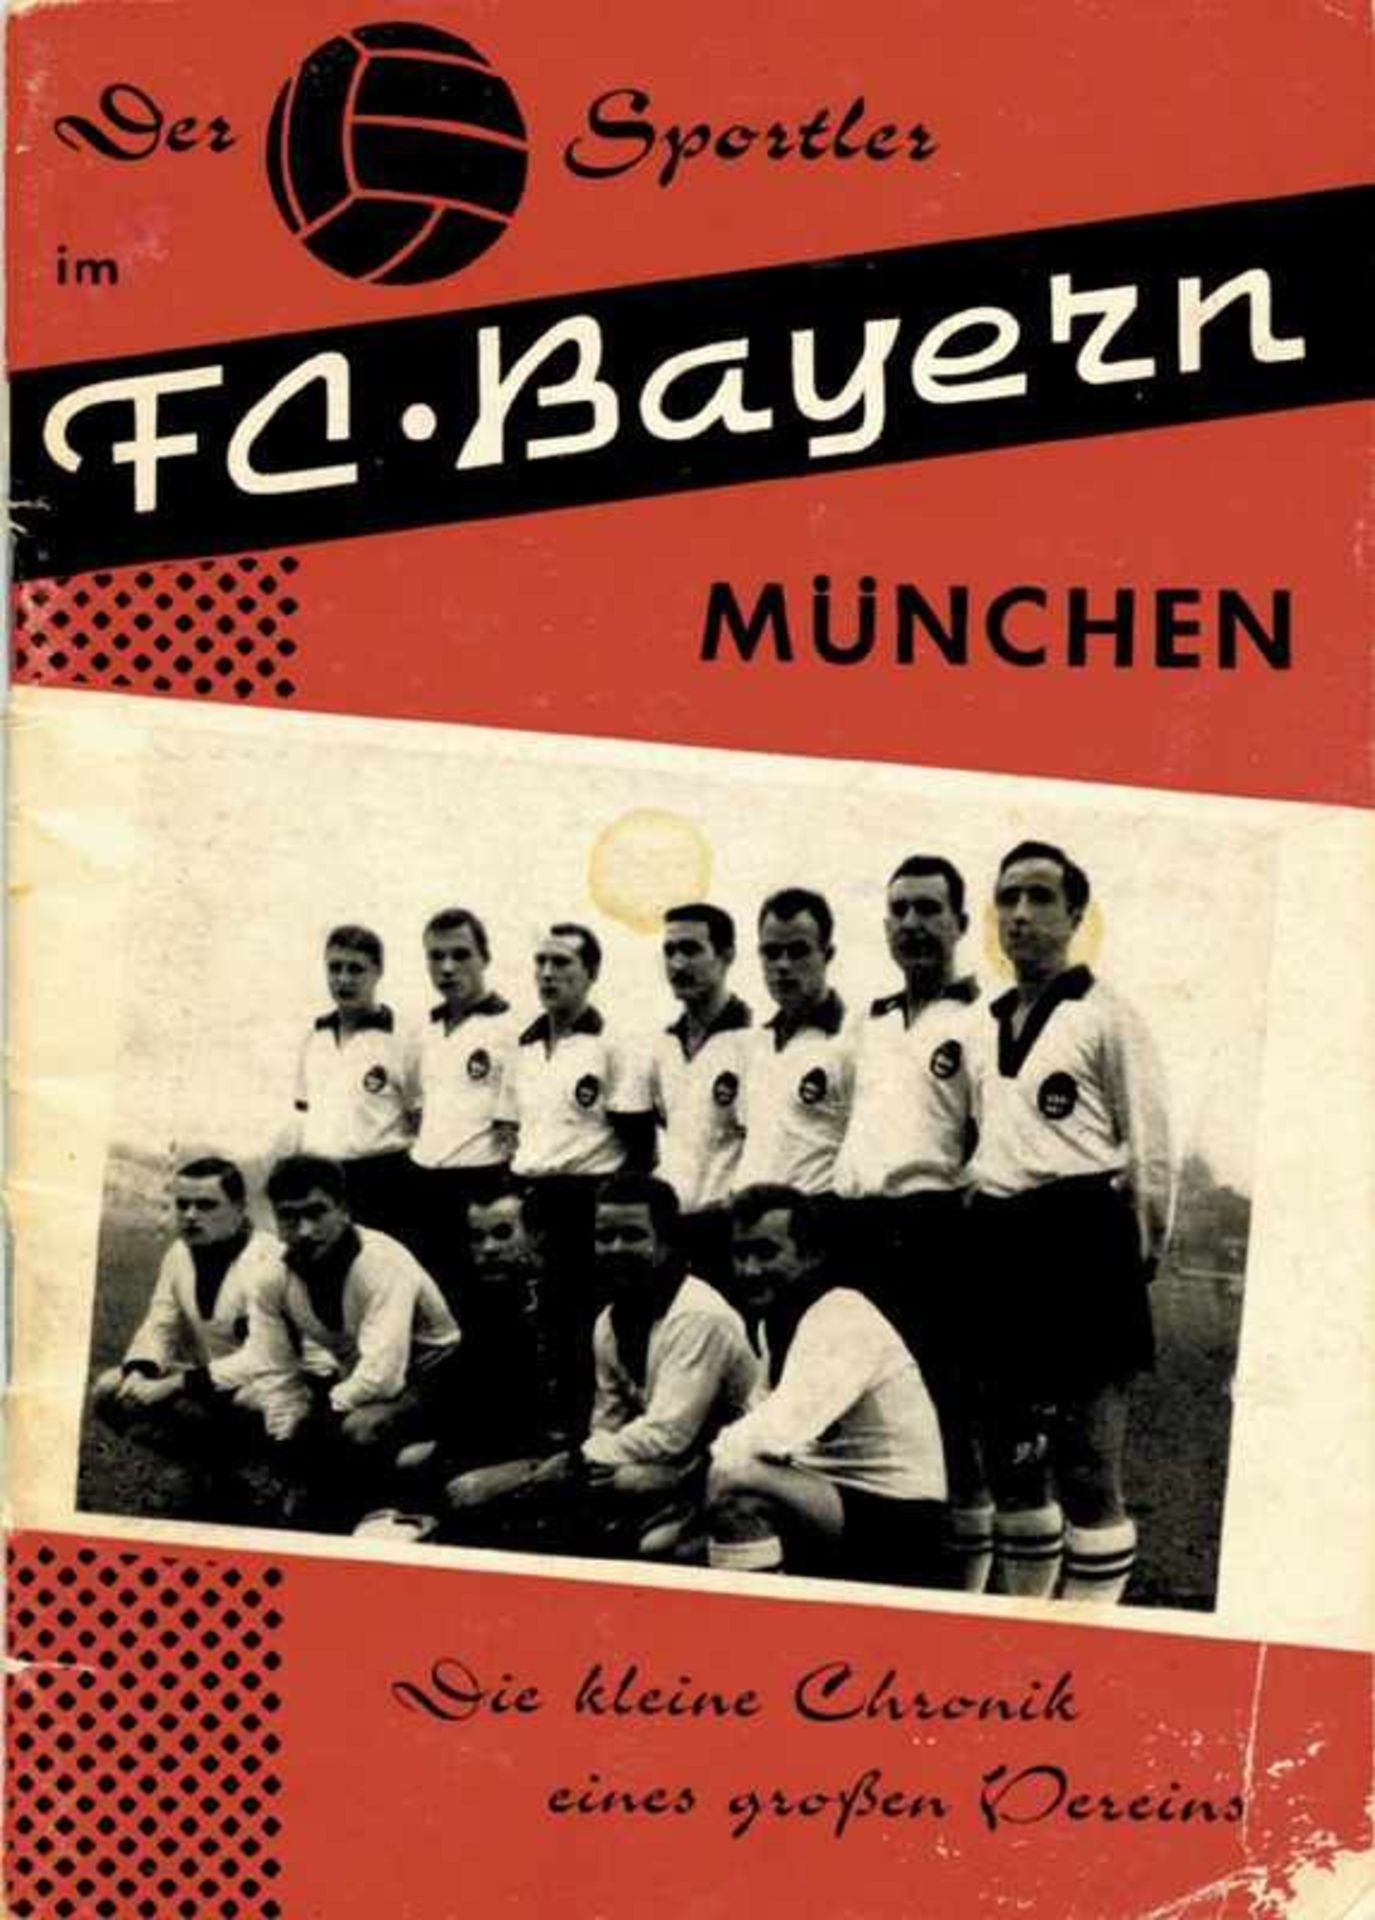 Bayern Muenchen Rare Booklet 1961 - München,Bayern-Schmid - Der Sportler im FC Bayern München. Die